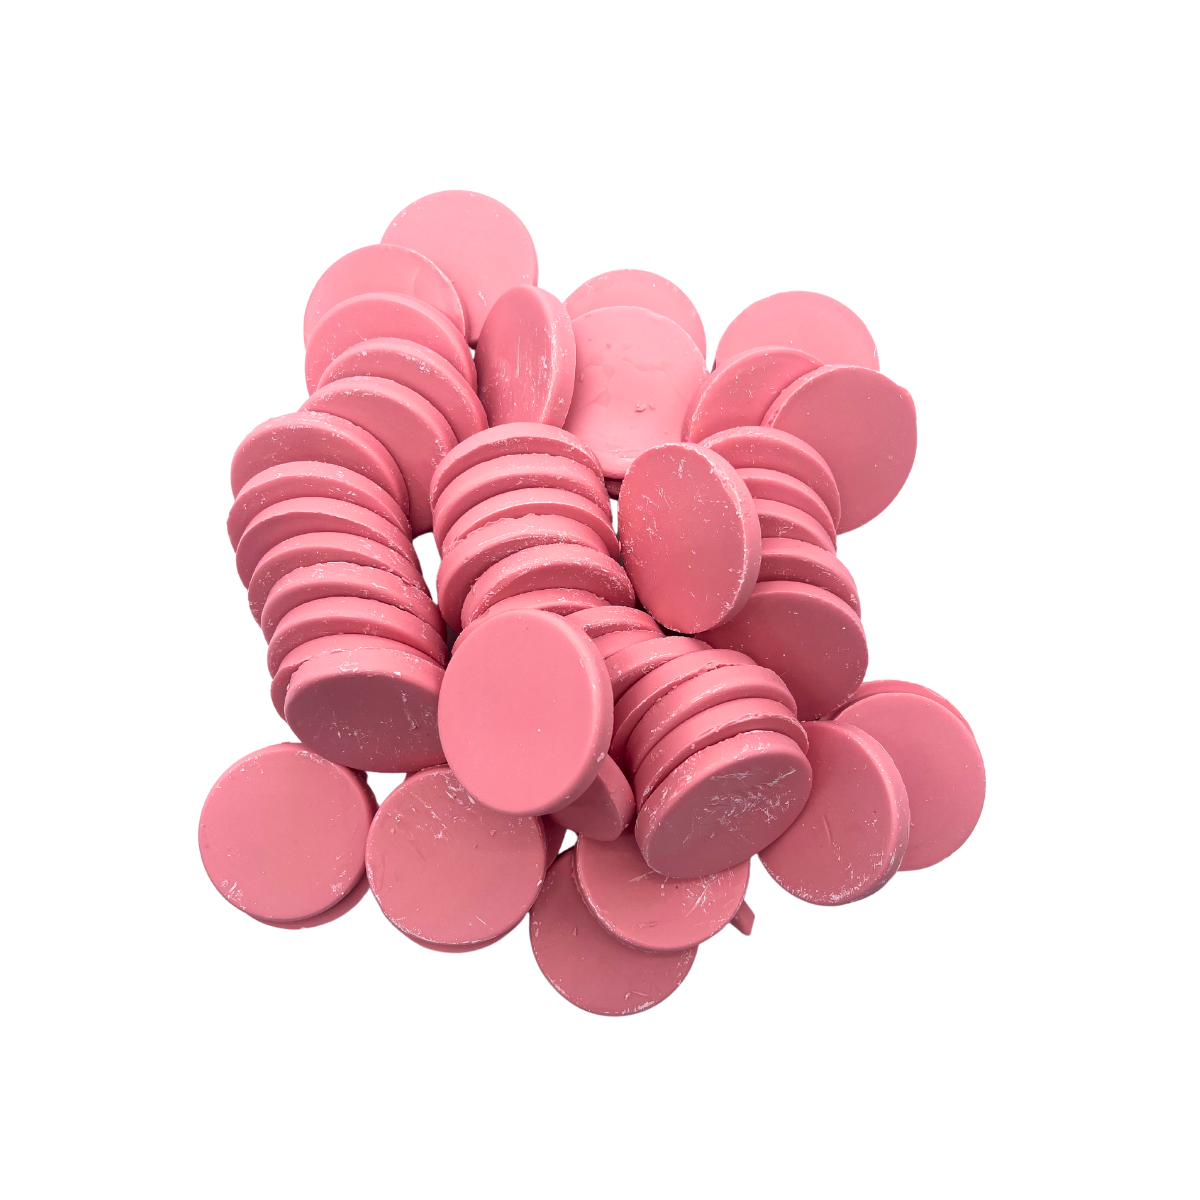 Depilcompany Hard Wax Pink – Cera dura profesional de alto rendimiento con ingredientes activos especiales – 2.2 lbs. (1 UND)